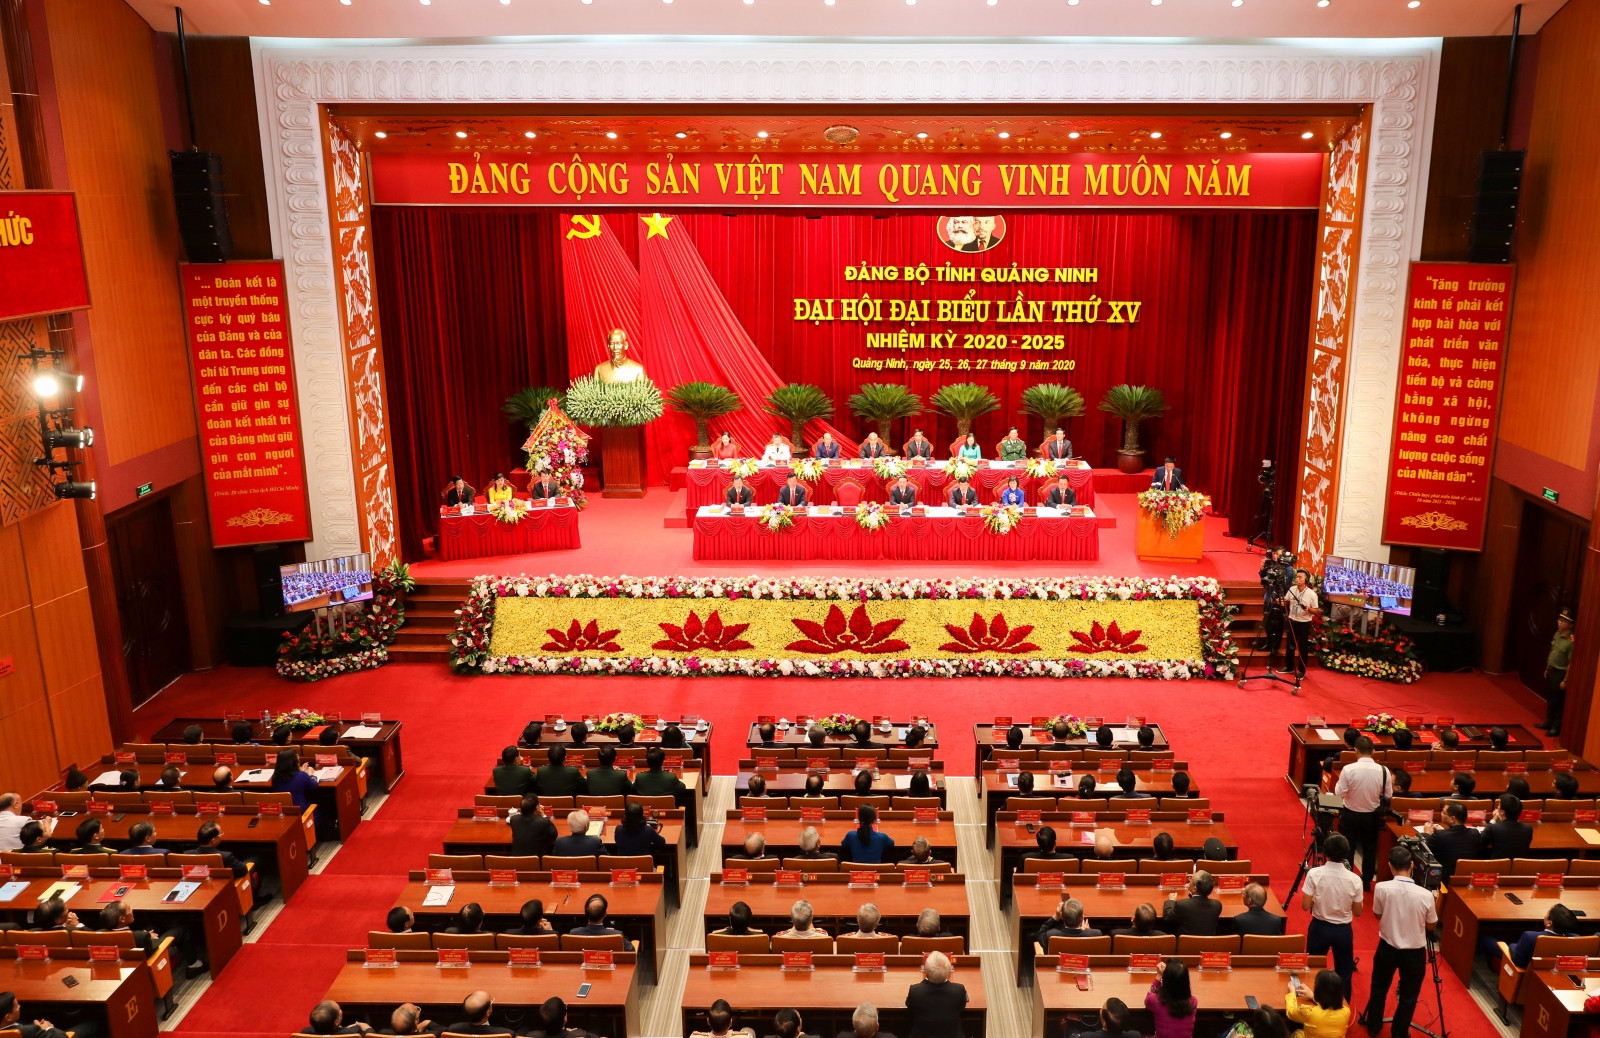 Khai mạc Đại hội đại biểu Đảng bộ tỉnh Quảng Ninh lần thức XV, nhiệm kỳ 2020-2025